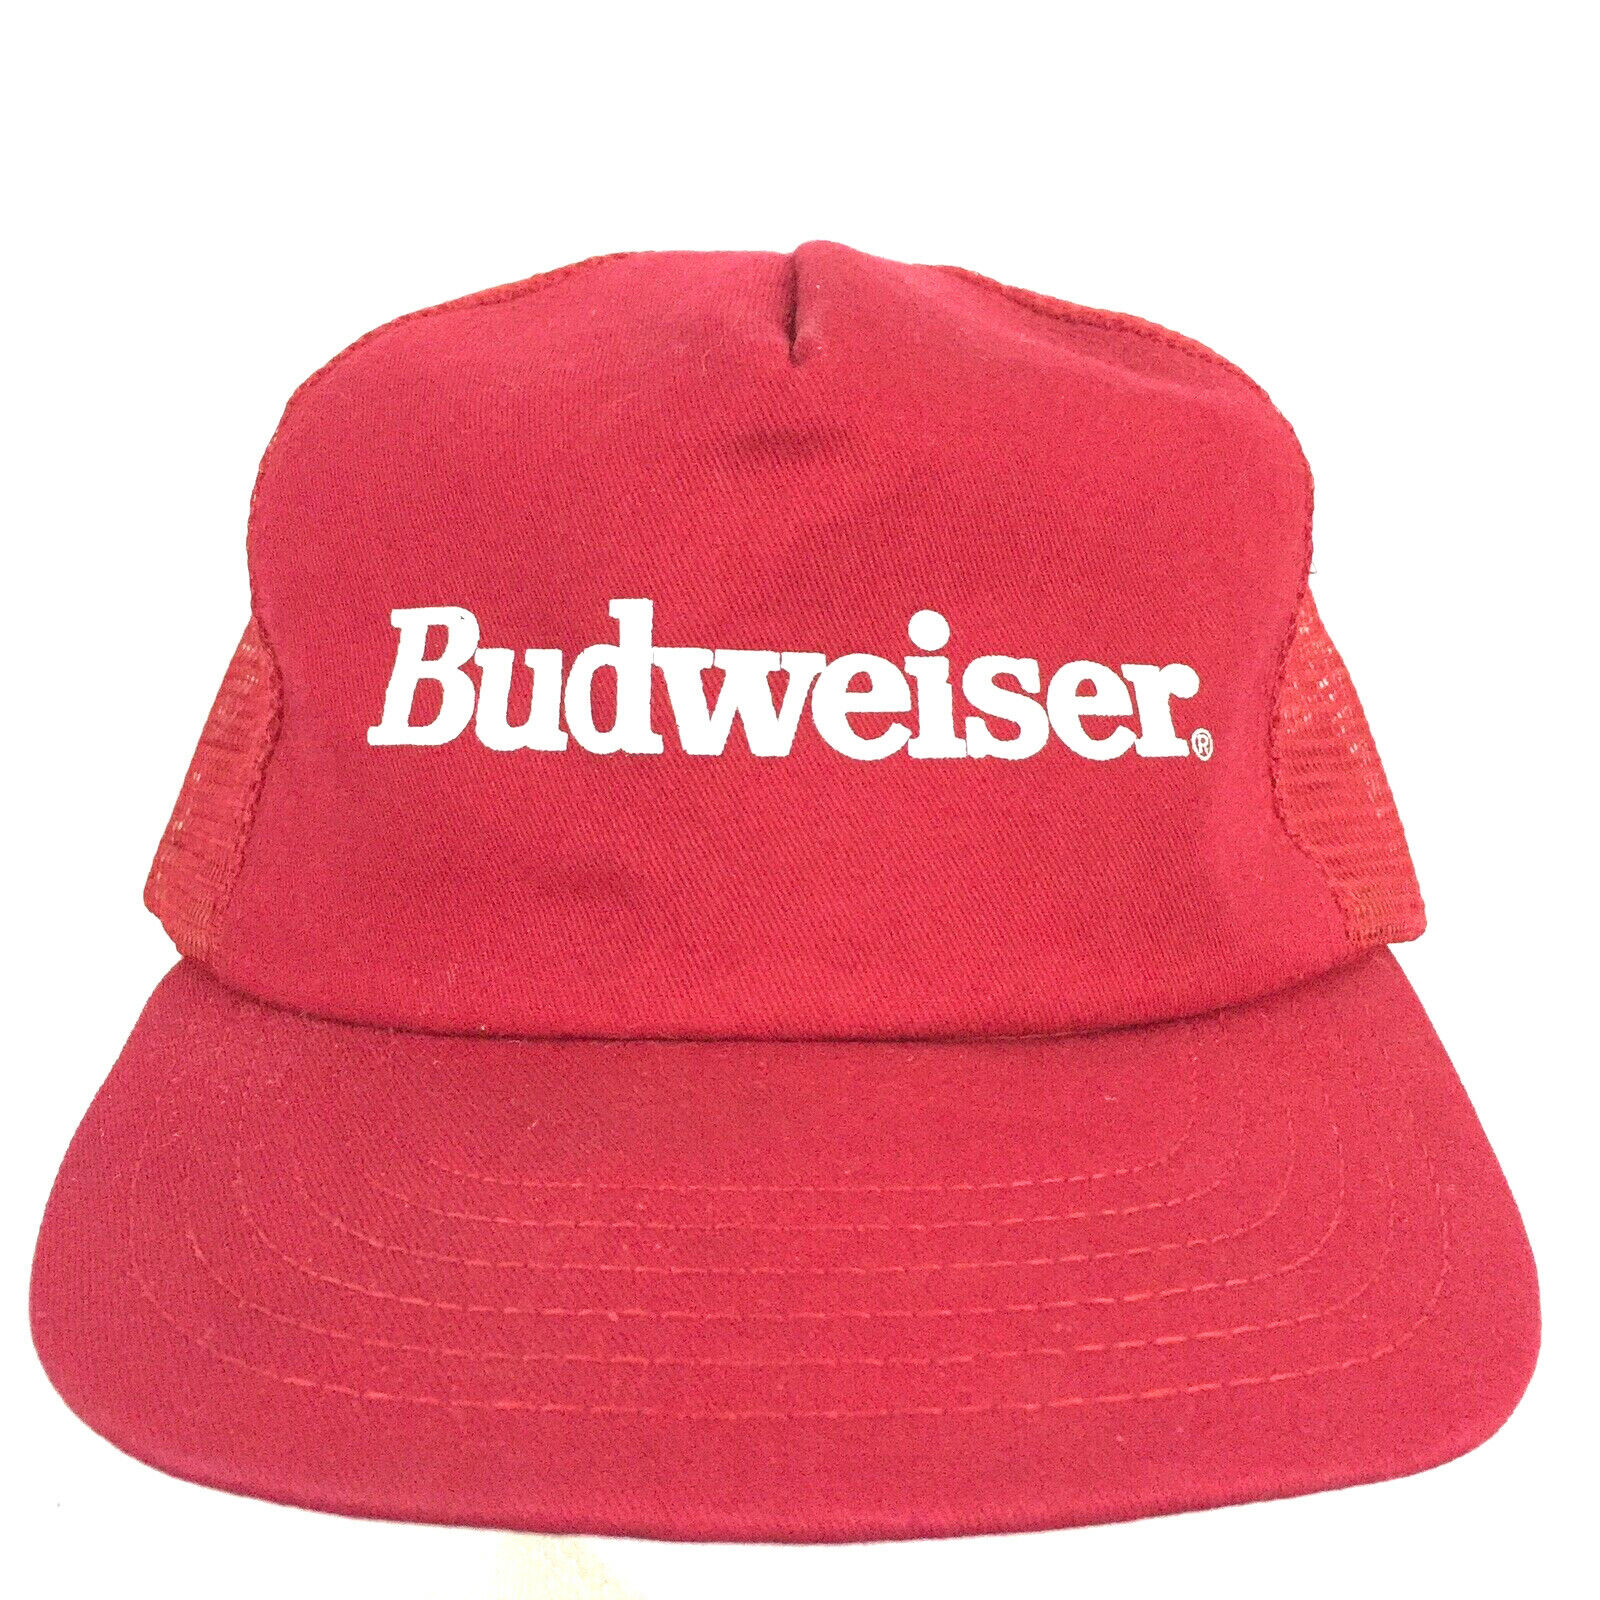 Vtg 80s Budweiser Cap Beer Spell Out Logo Made USA Snapback Trucker Baseball Hat